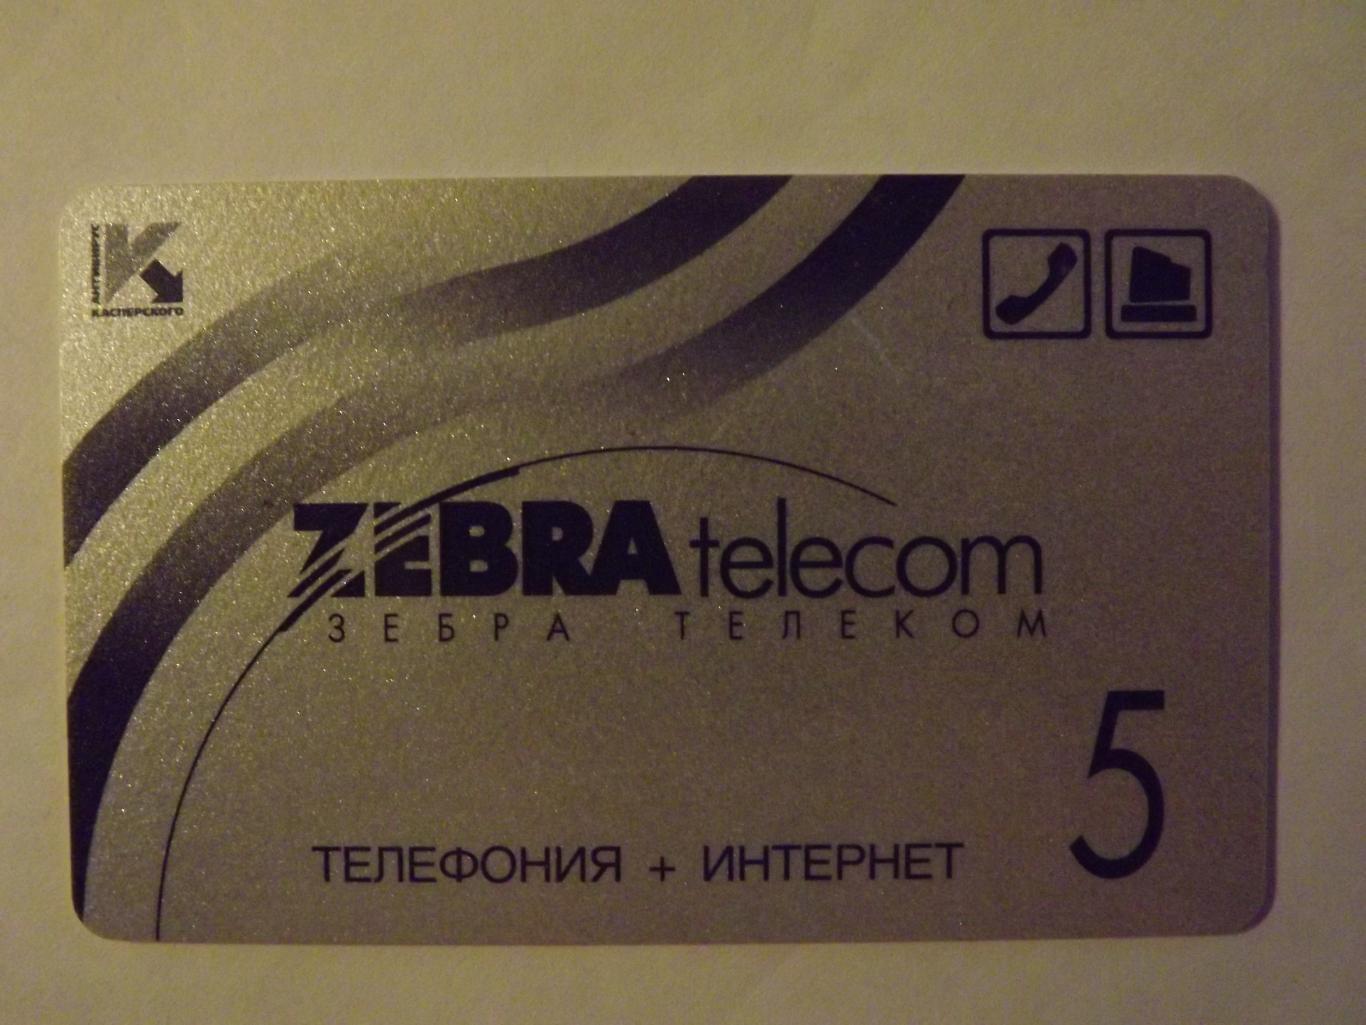 Телефонная карта Зебра телеком 5 (вид 1)